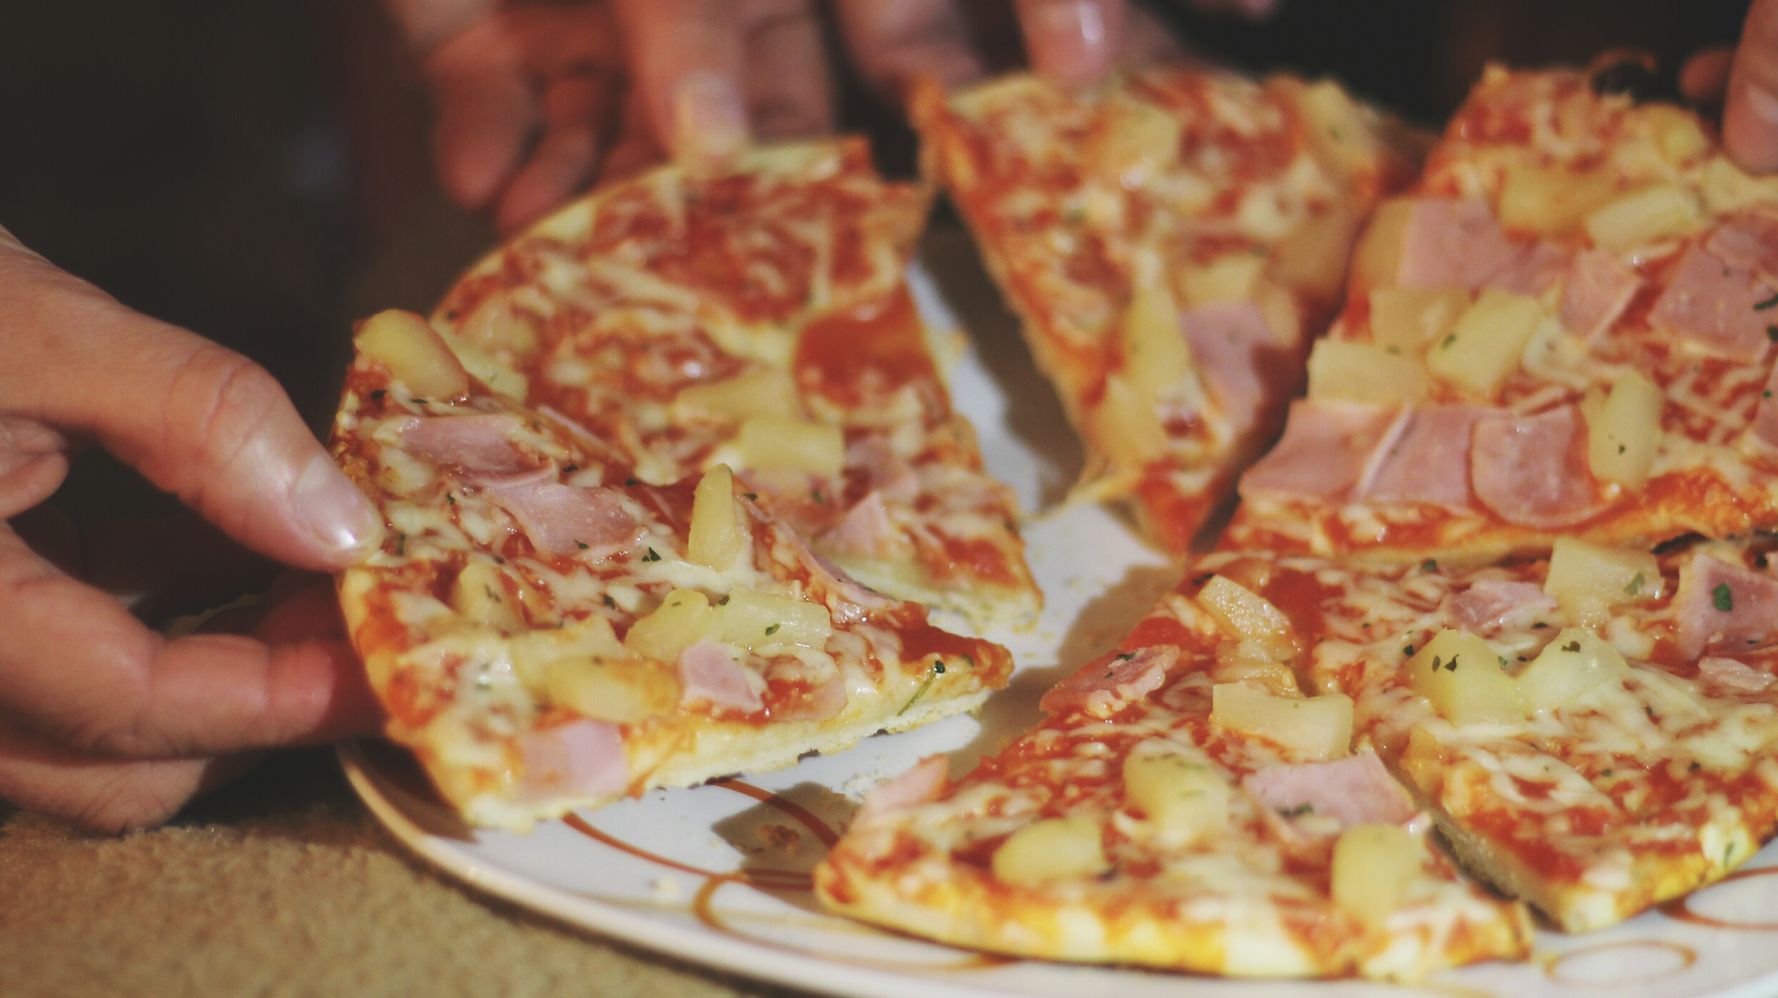 La meilleure pizza jambon fromage de supermarché selon 60 millions de consommateurs